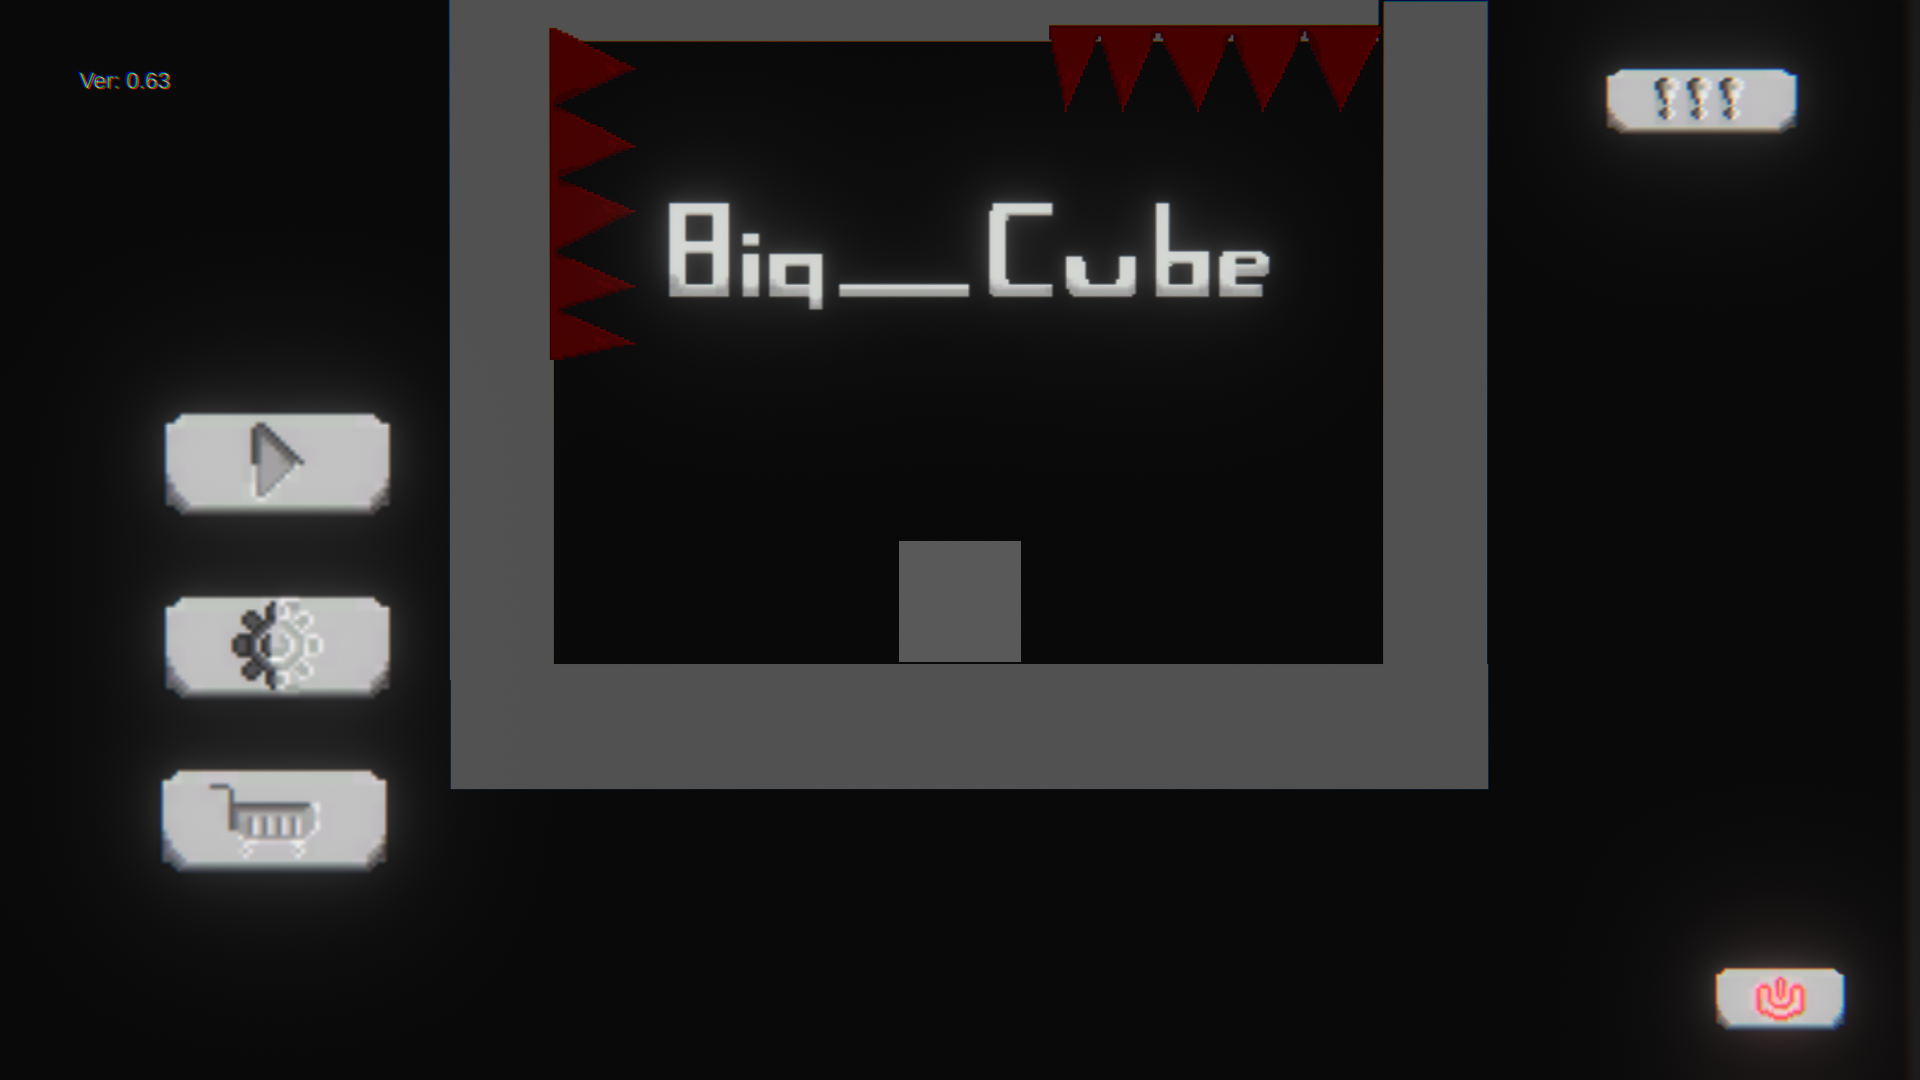 BIG_CUBE